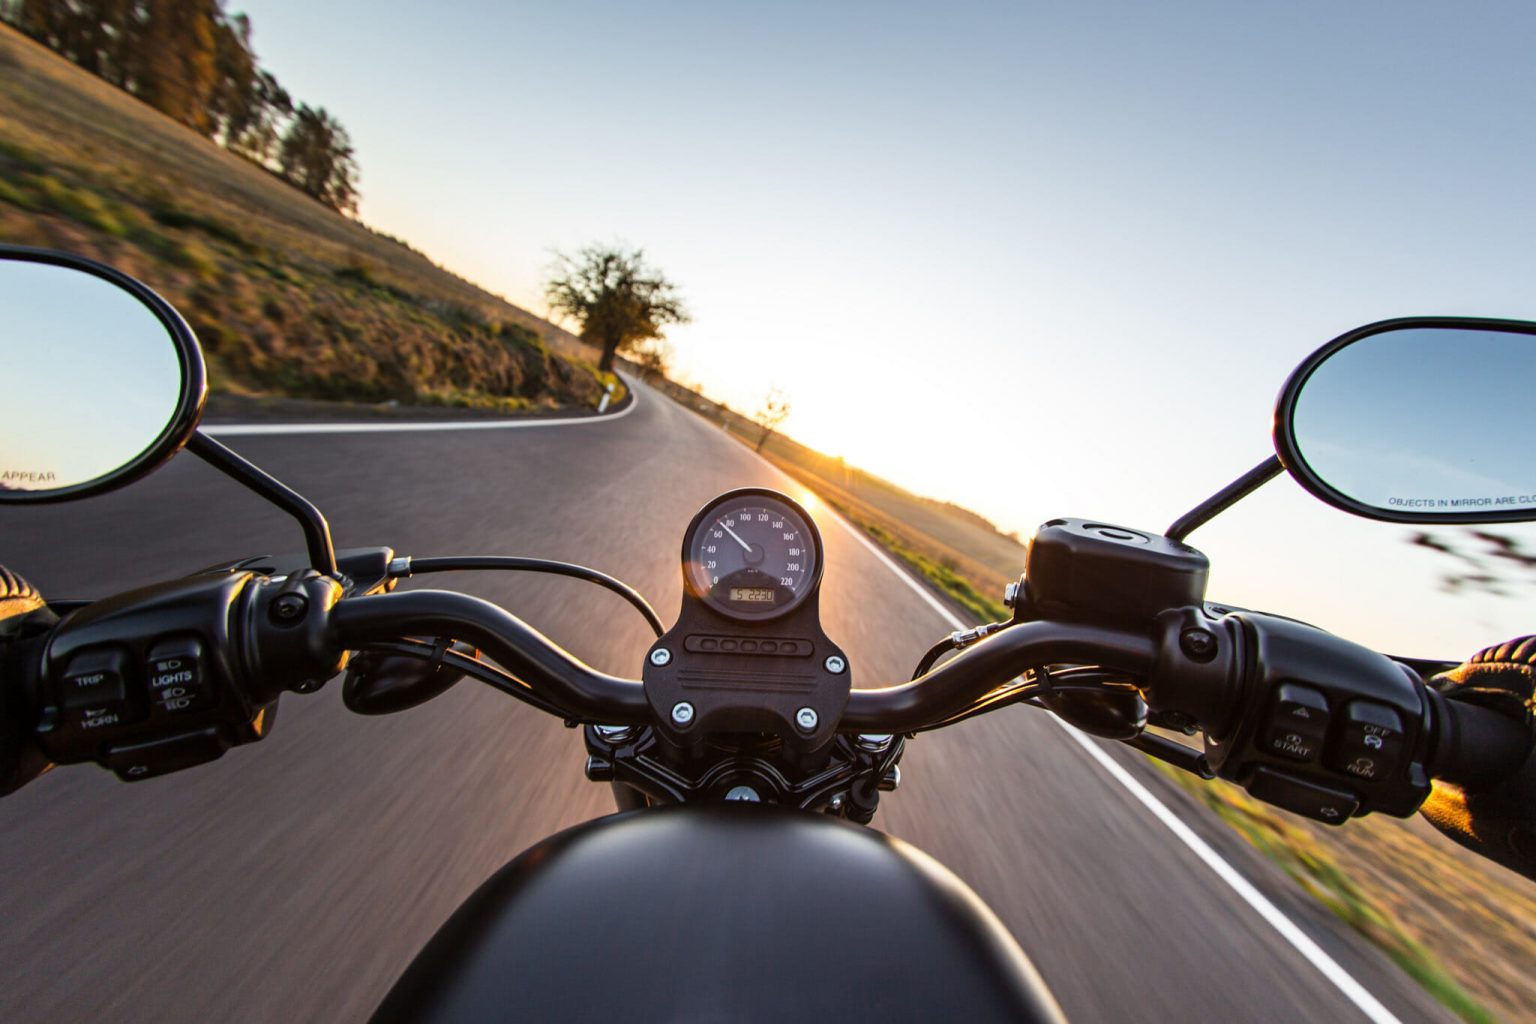 Texas Motorcycle Image